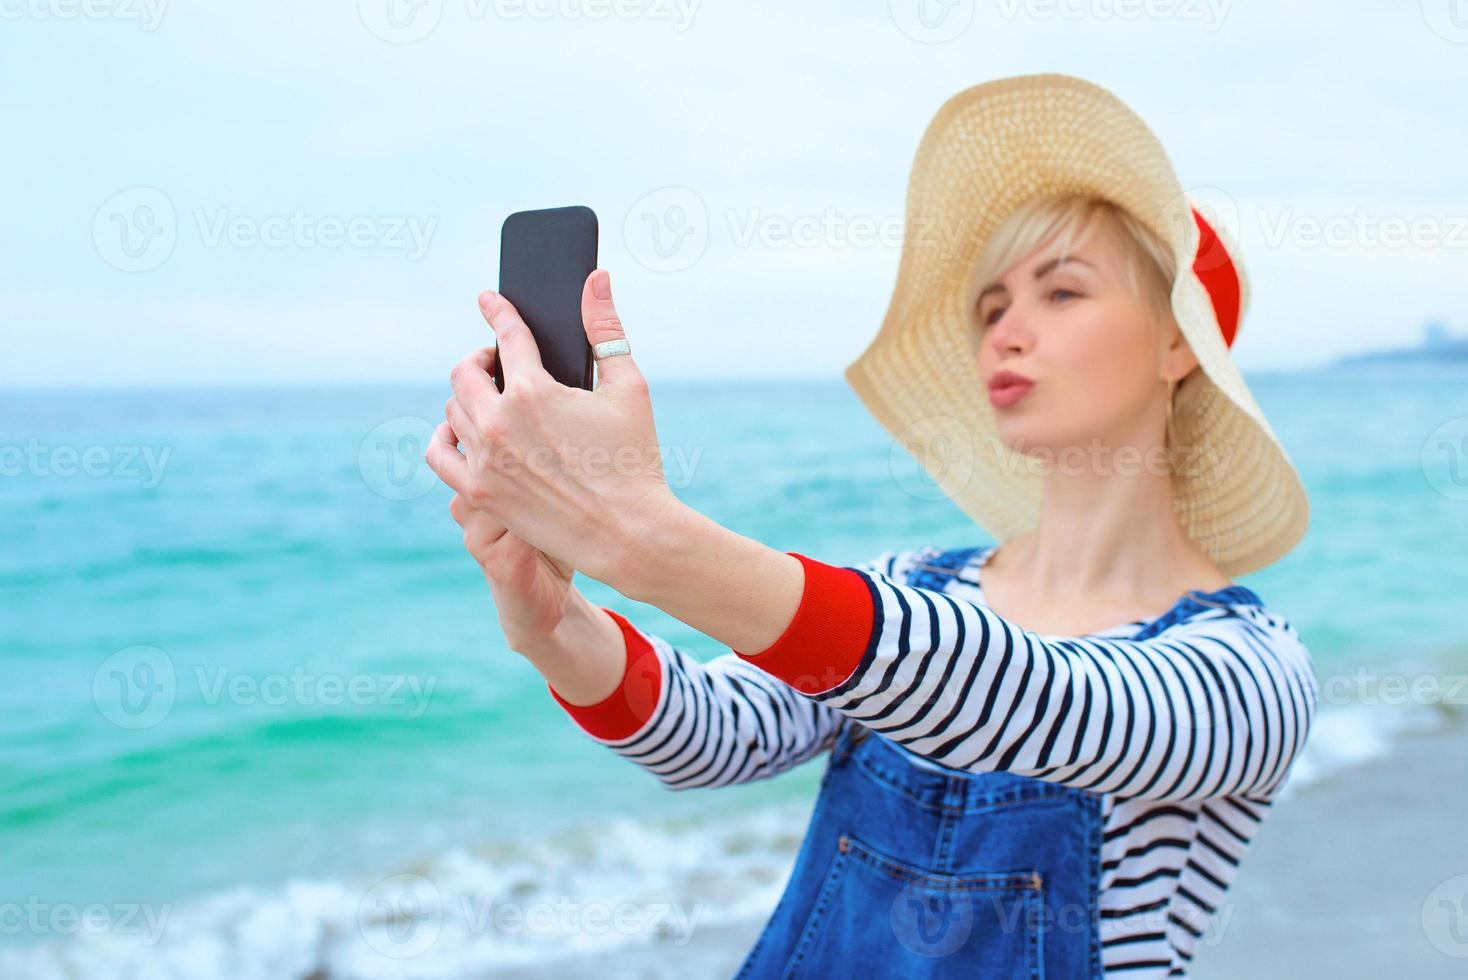 schöne junge blonde kaukasische frau im urlaub in strohhut, gestreifter bluse und jeansoveralls, die selfie auf dem smartphone vor dem erstaunlichen blauen meereshintergrund machen foto